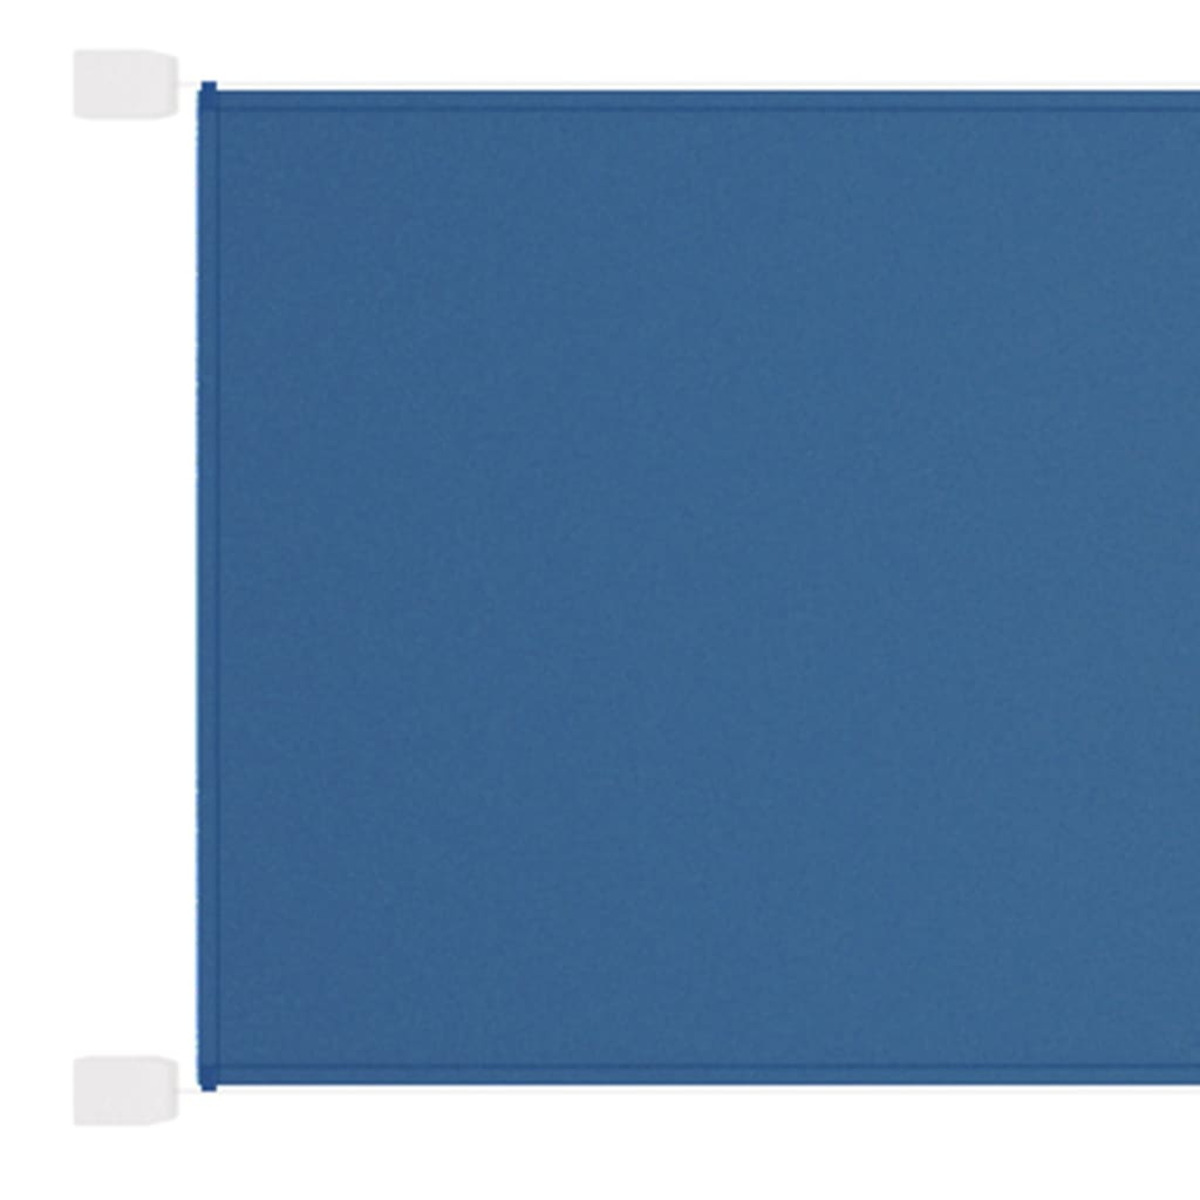 VIDAXL Sichtschutz, Blau 148469